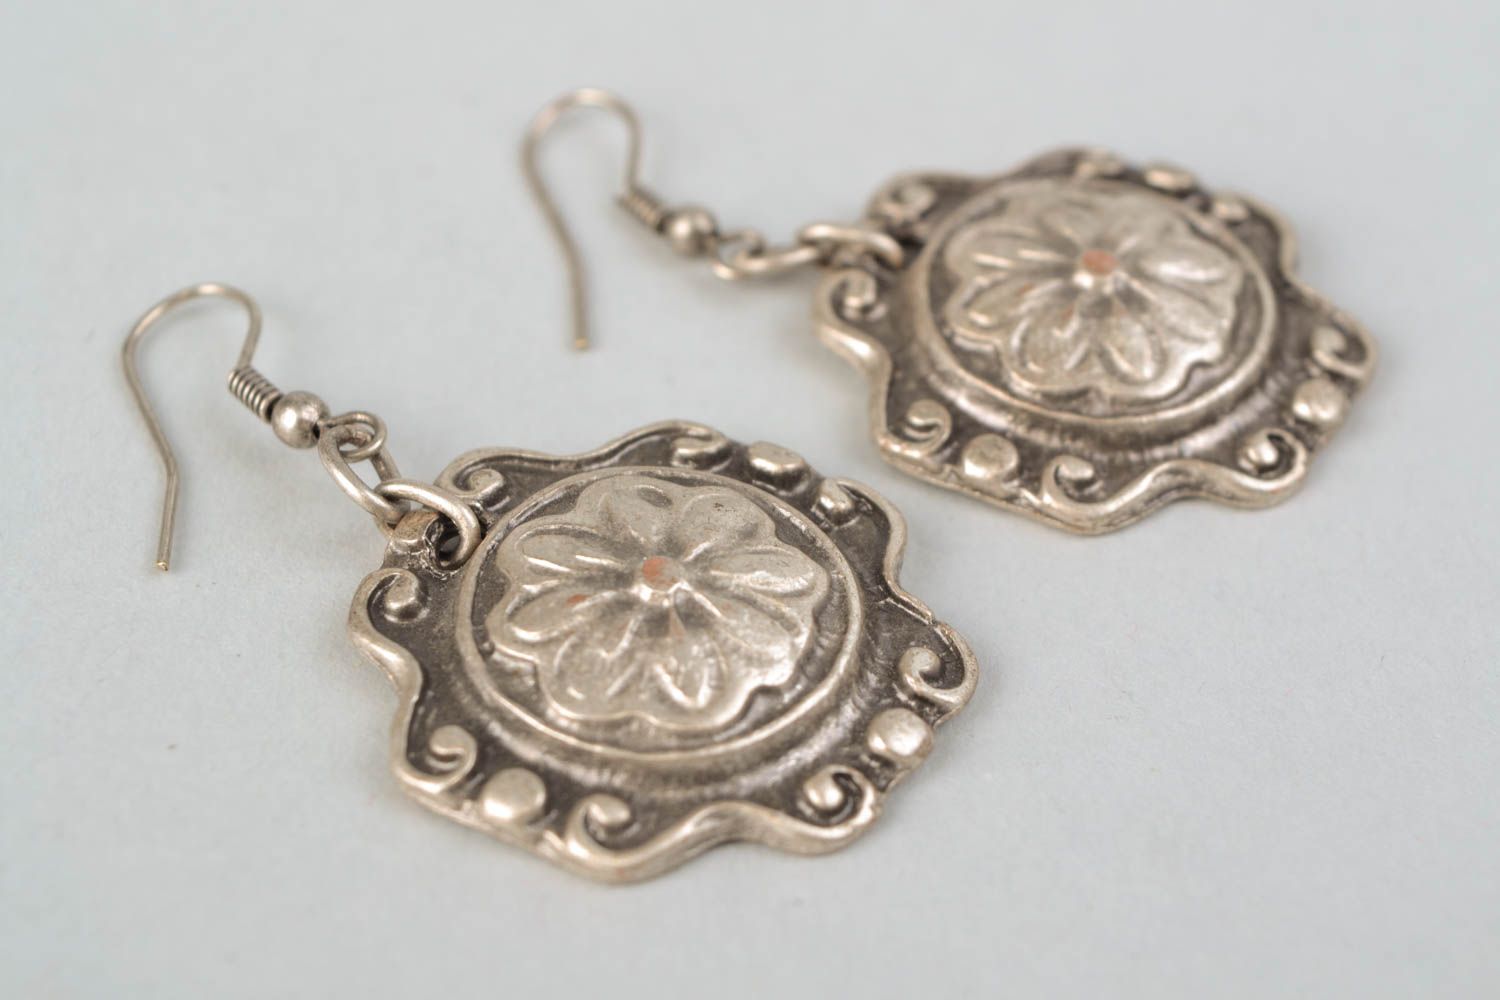 Unusual earrings made of hypoallergenic metal photo 4